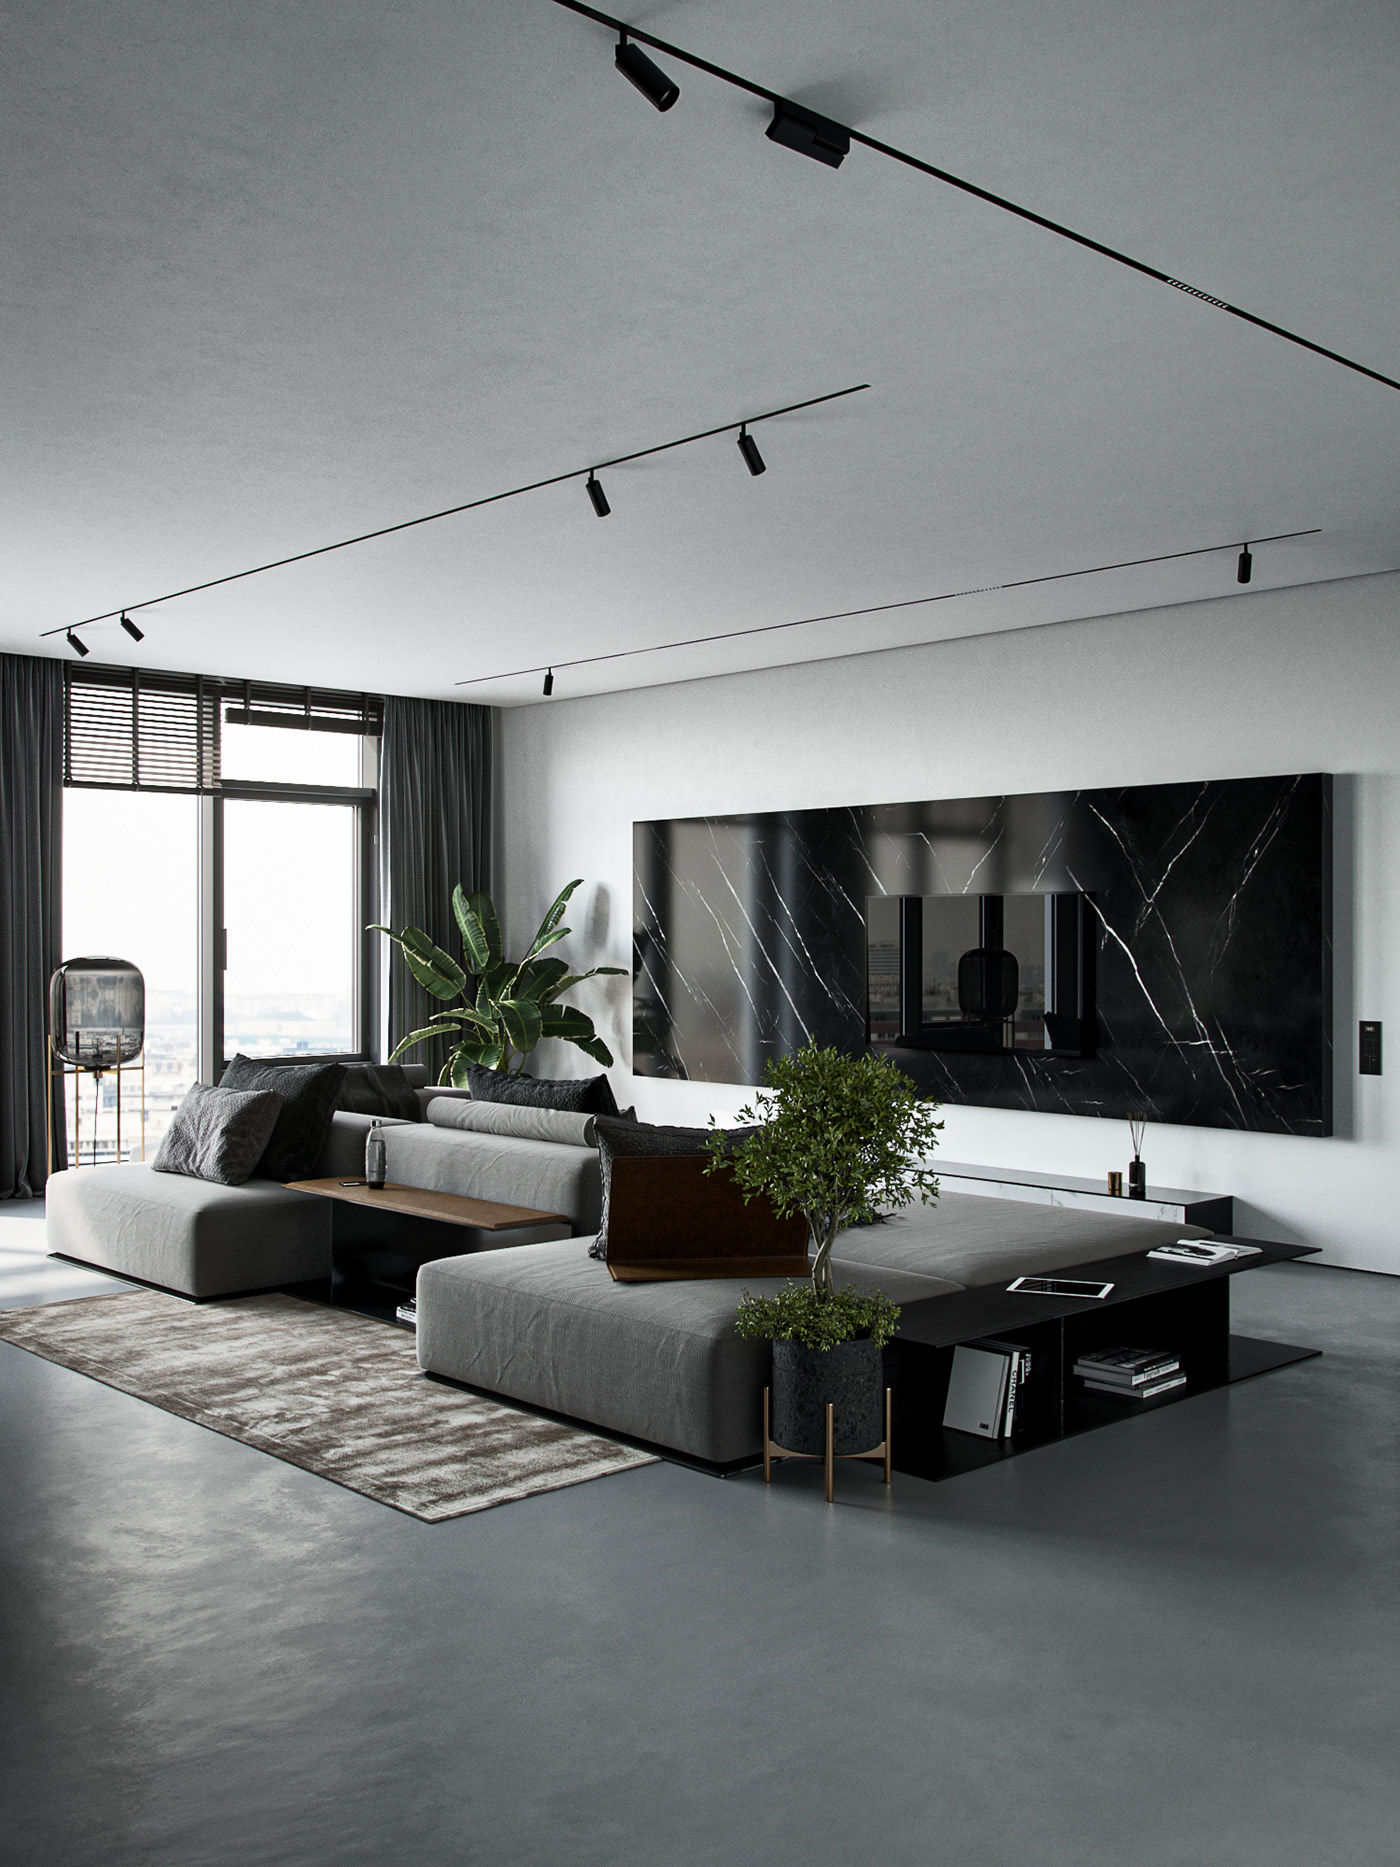 Monochrom Living Room (FREE 3d model) on Behance